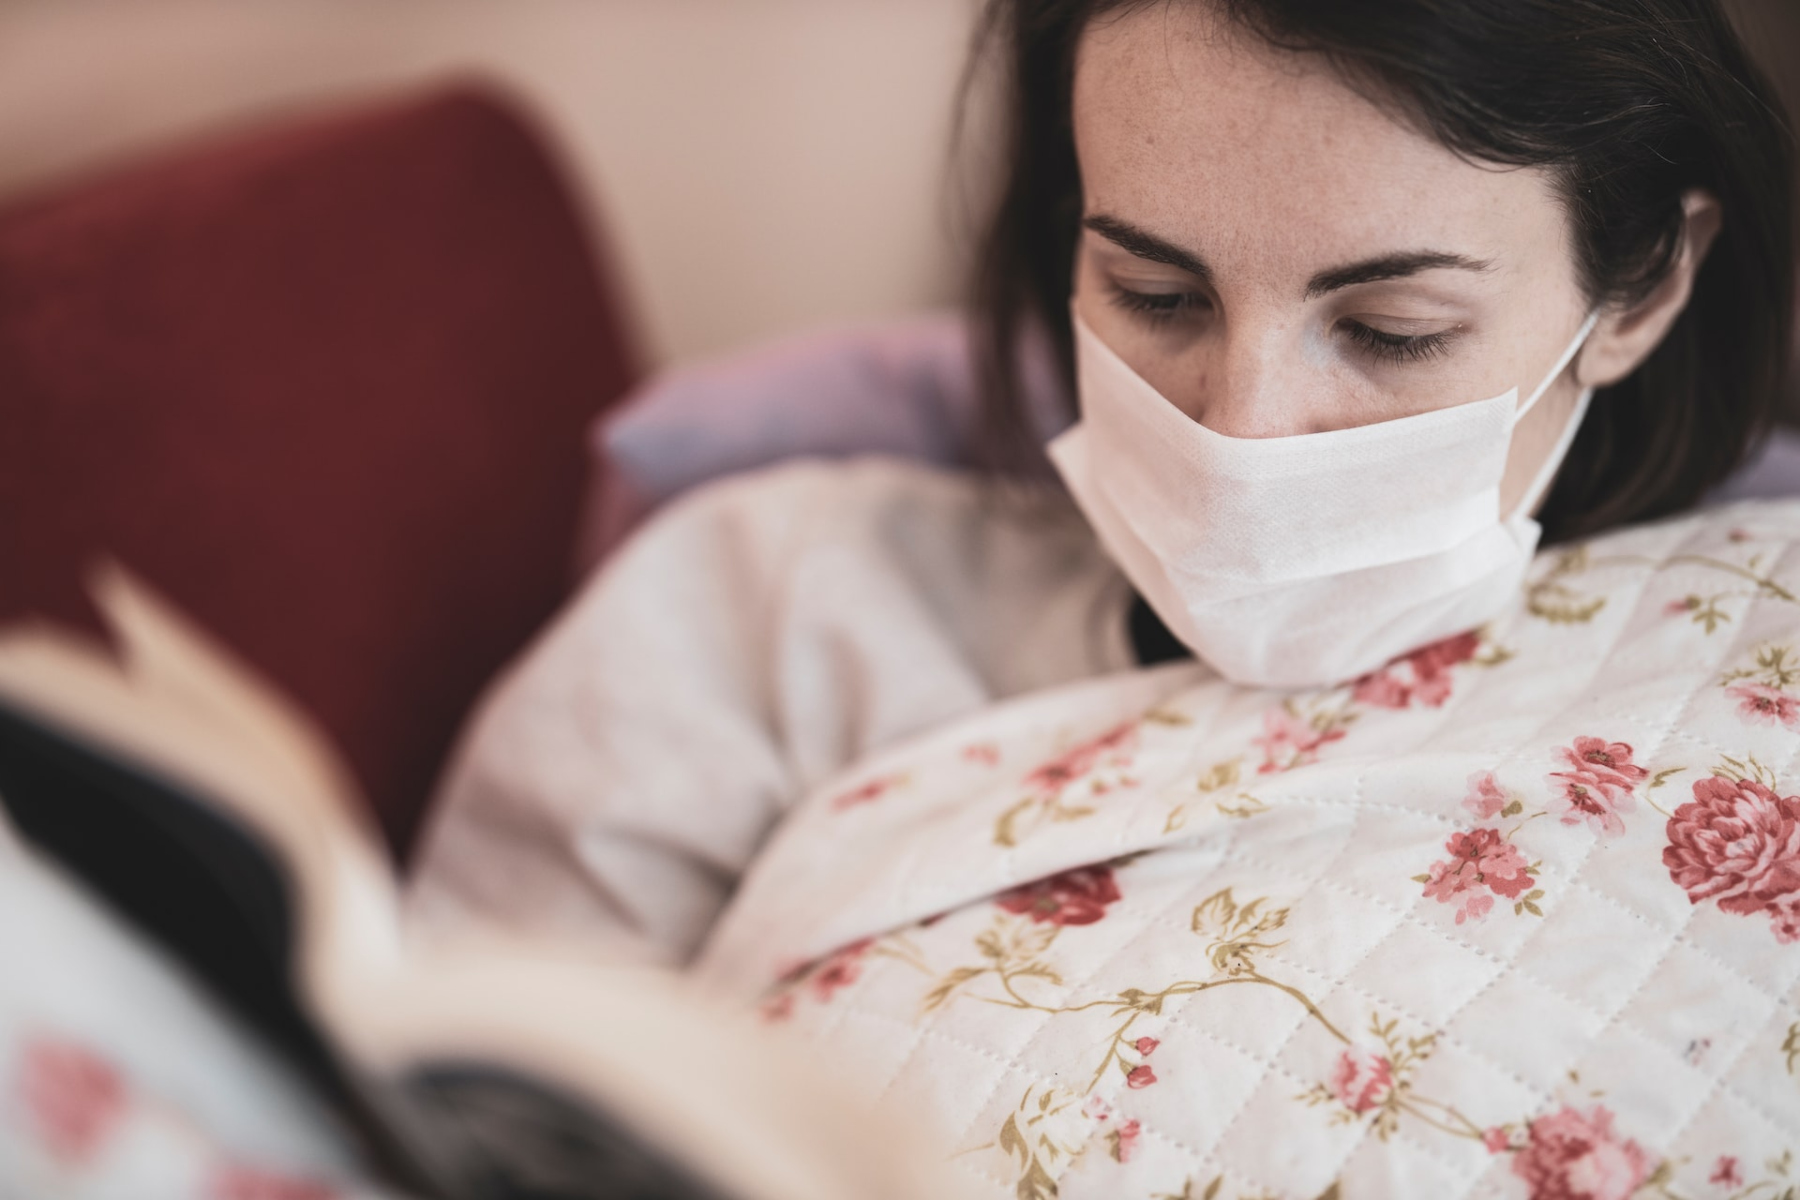 Εποχιακή γρίπη: Προειδοποίηση για δύσκολο χειμώνα εξαιτίας της εποχιακής γρίπης